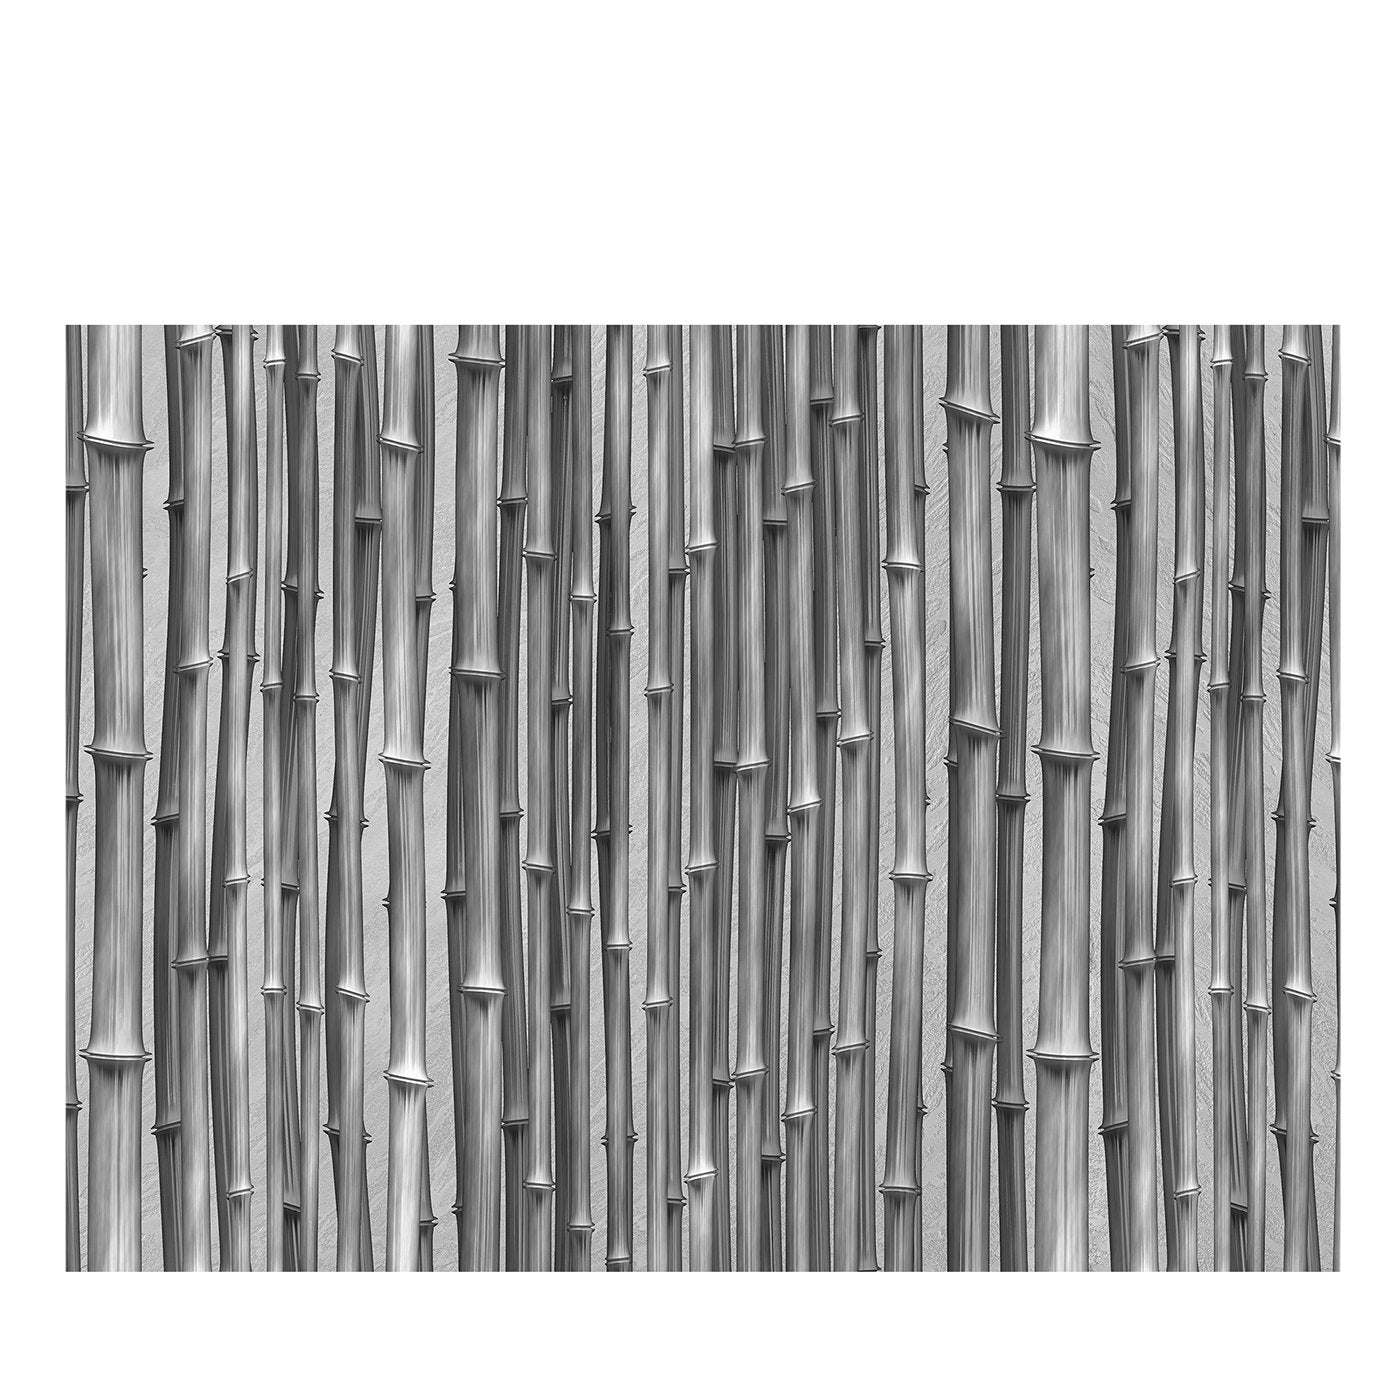 Bamboo Sticks Textured Wallpaper - Main view